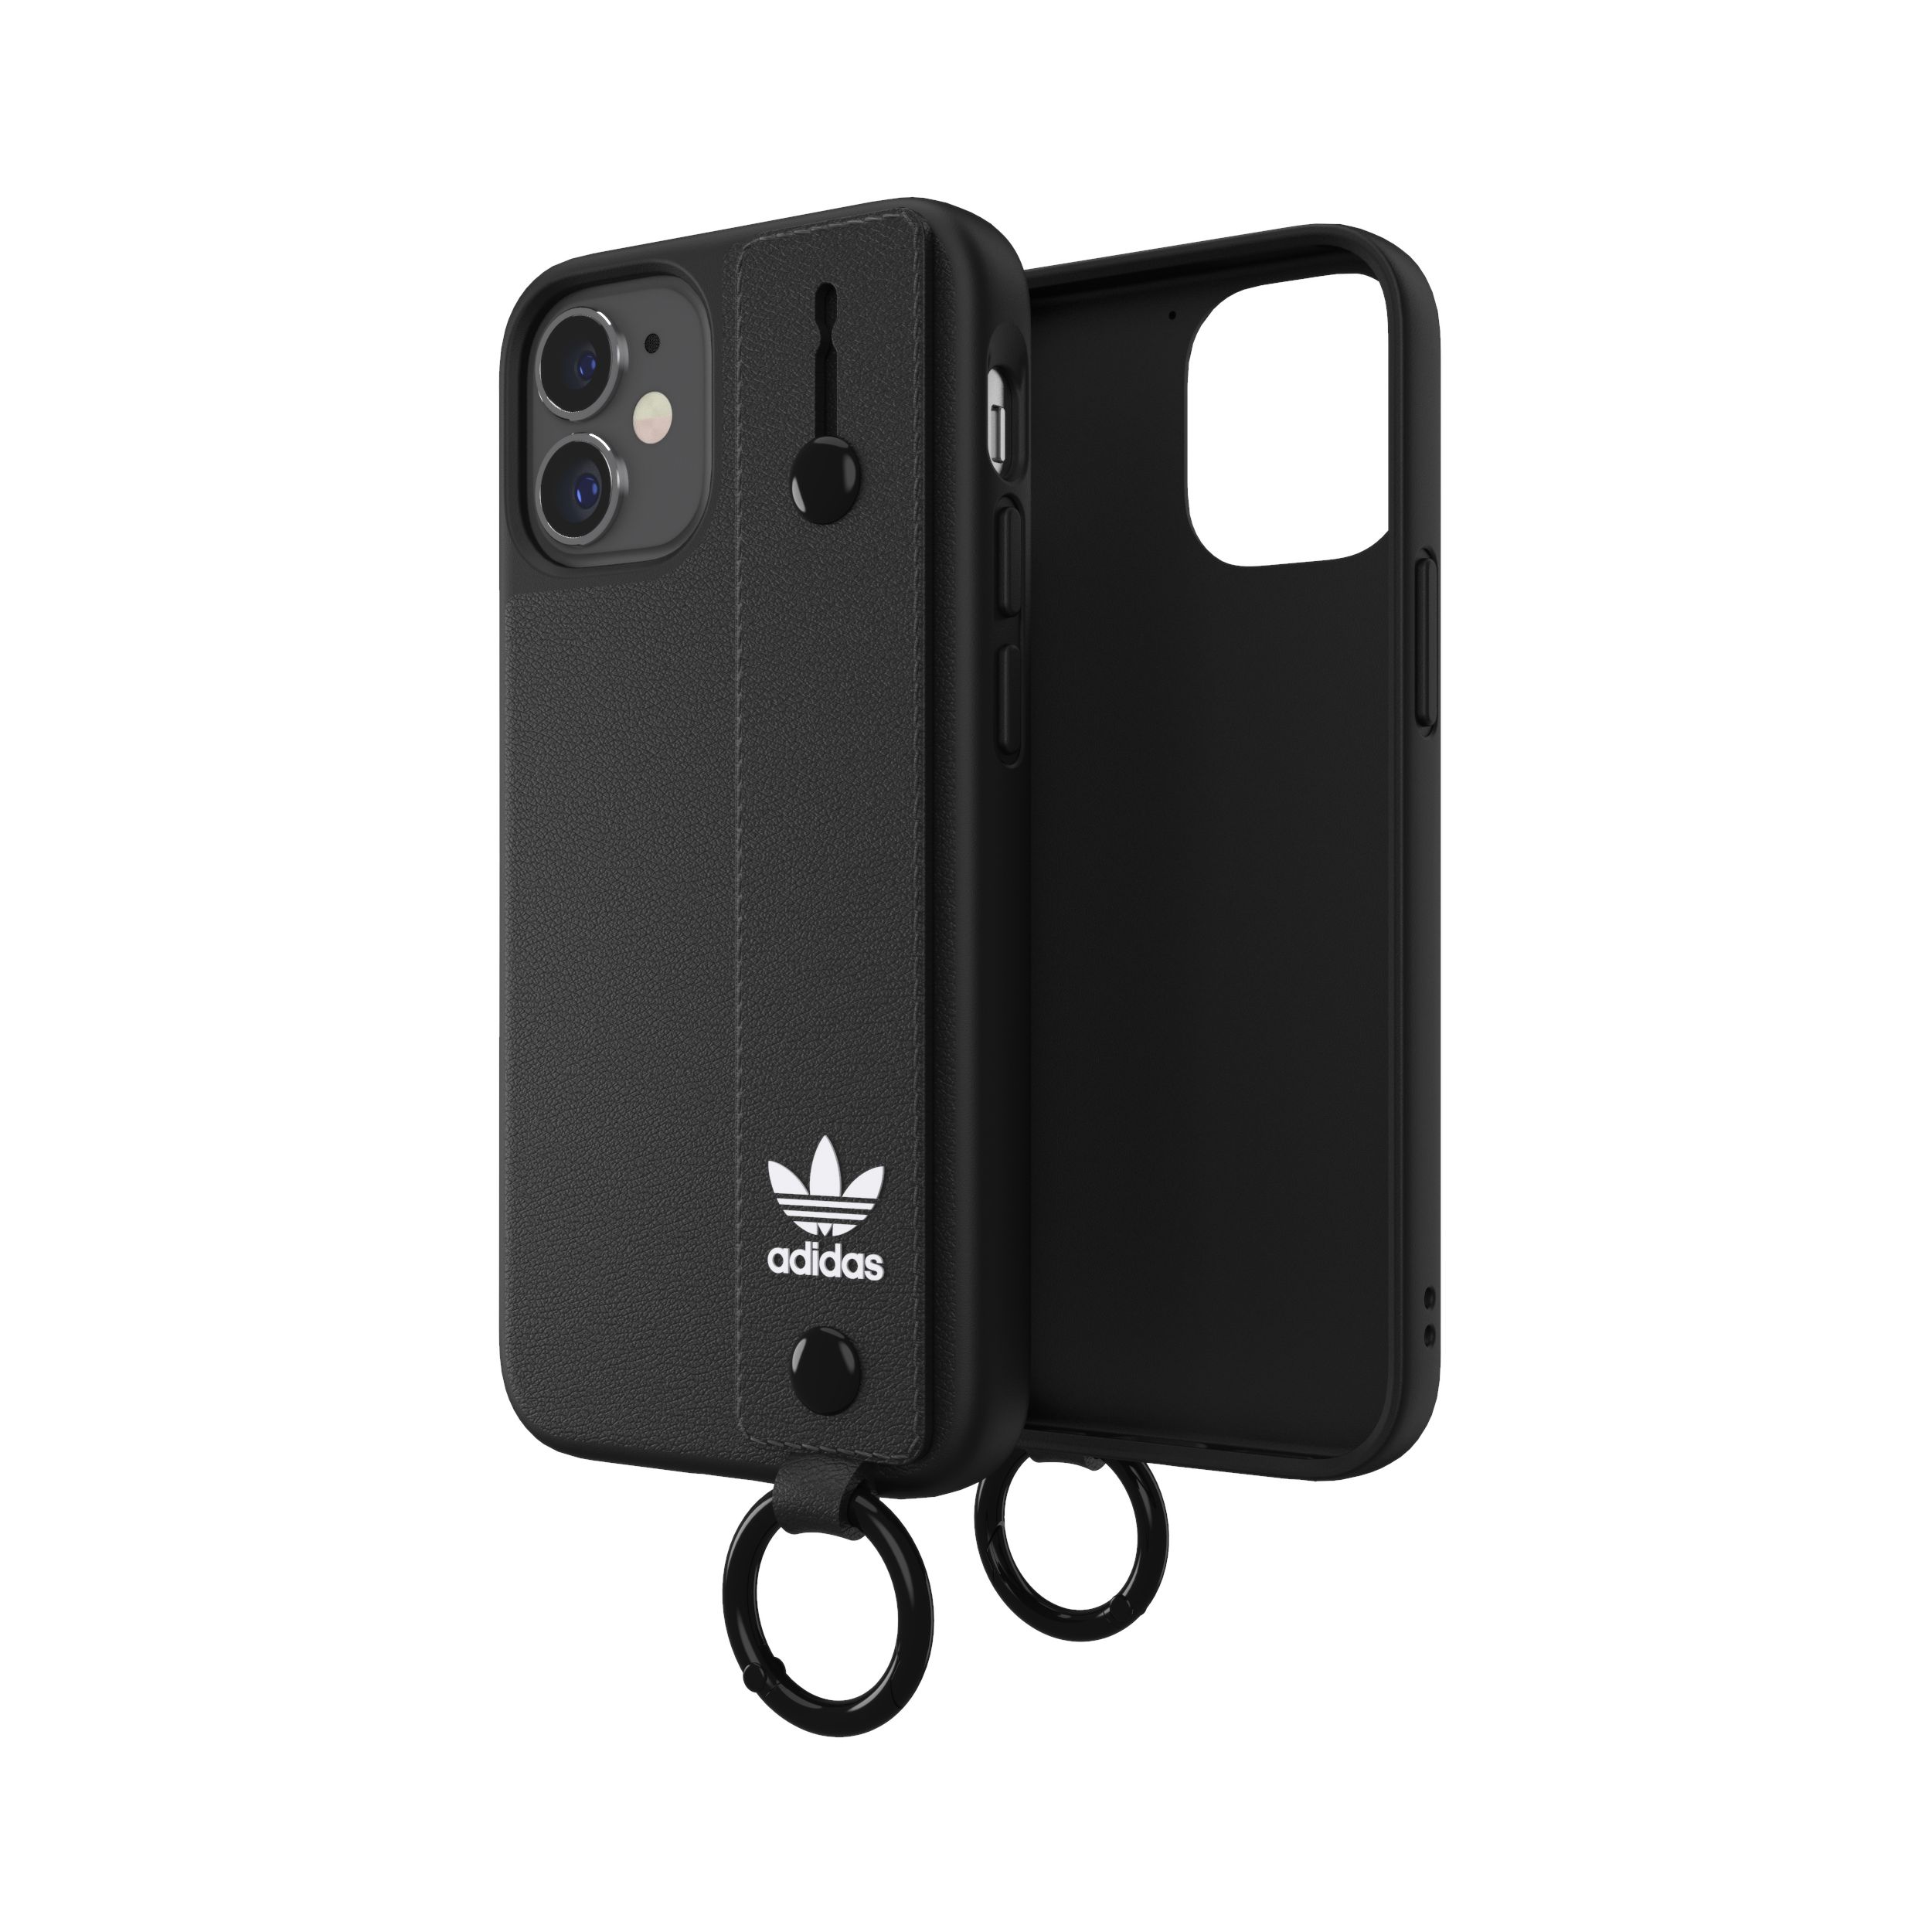 adidas アディダス スマホケース iPhone 12 Mini ケース アイフォン カバー スマホケース ハンドストラップ ベルト 落下防止 スタンド機能 ブラック 黒